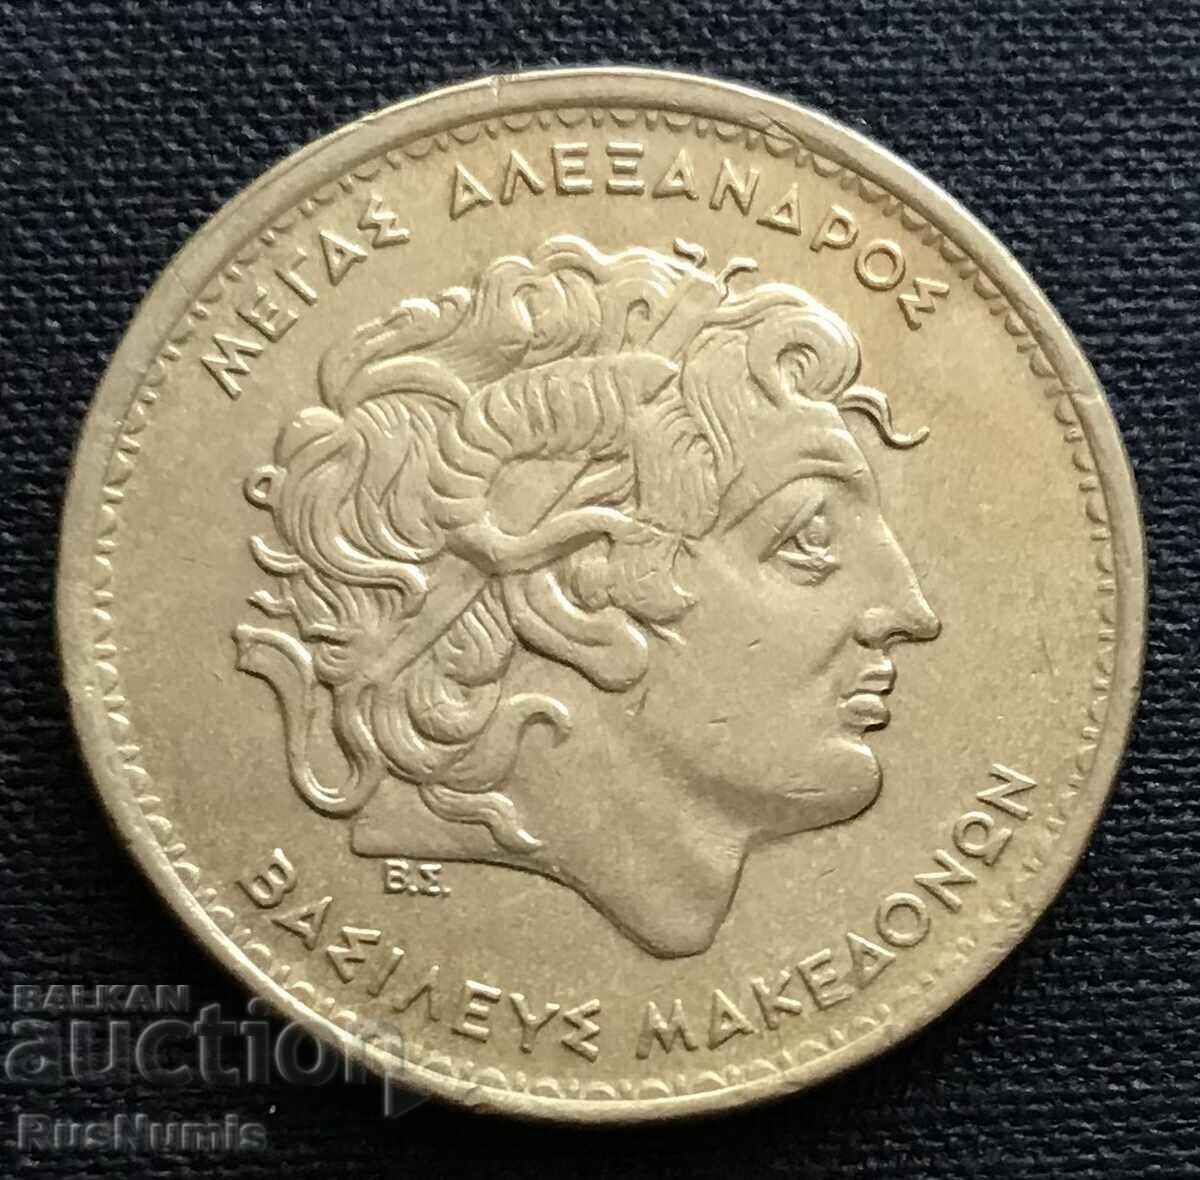 Greece. 100 drachmas 1994